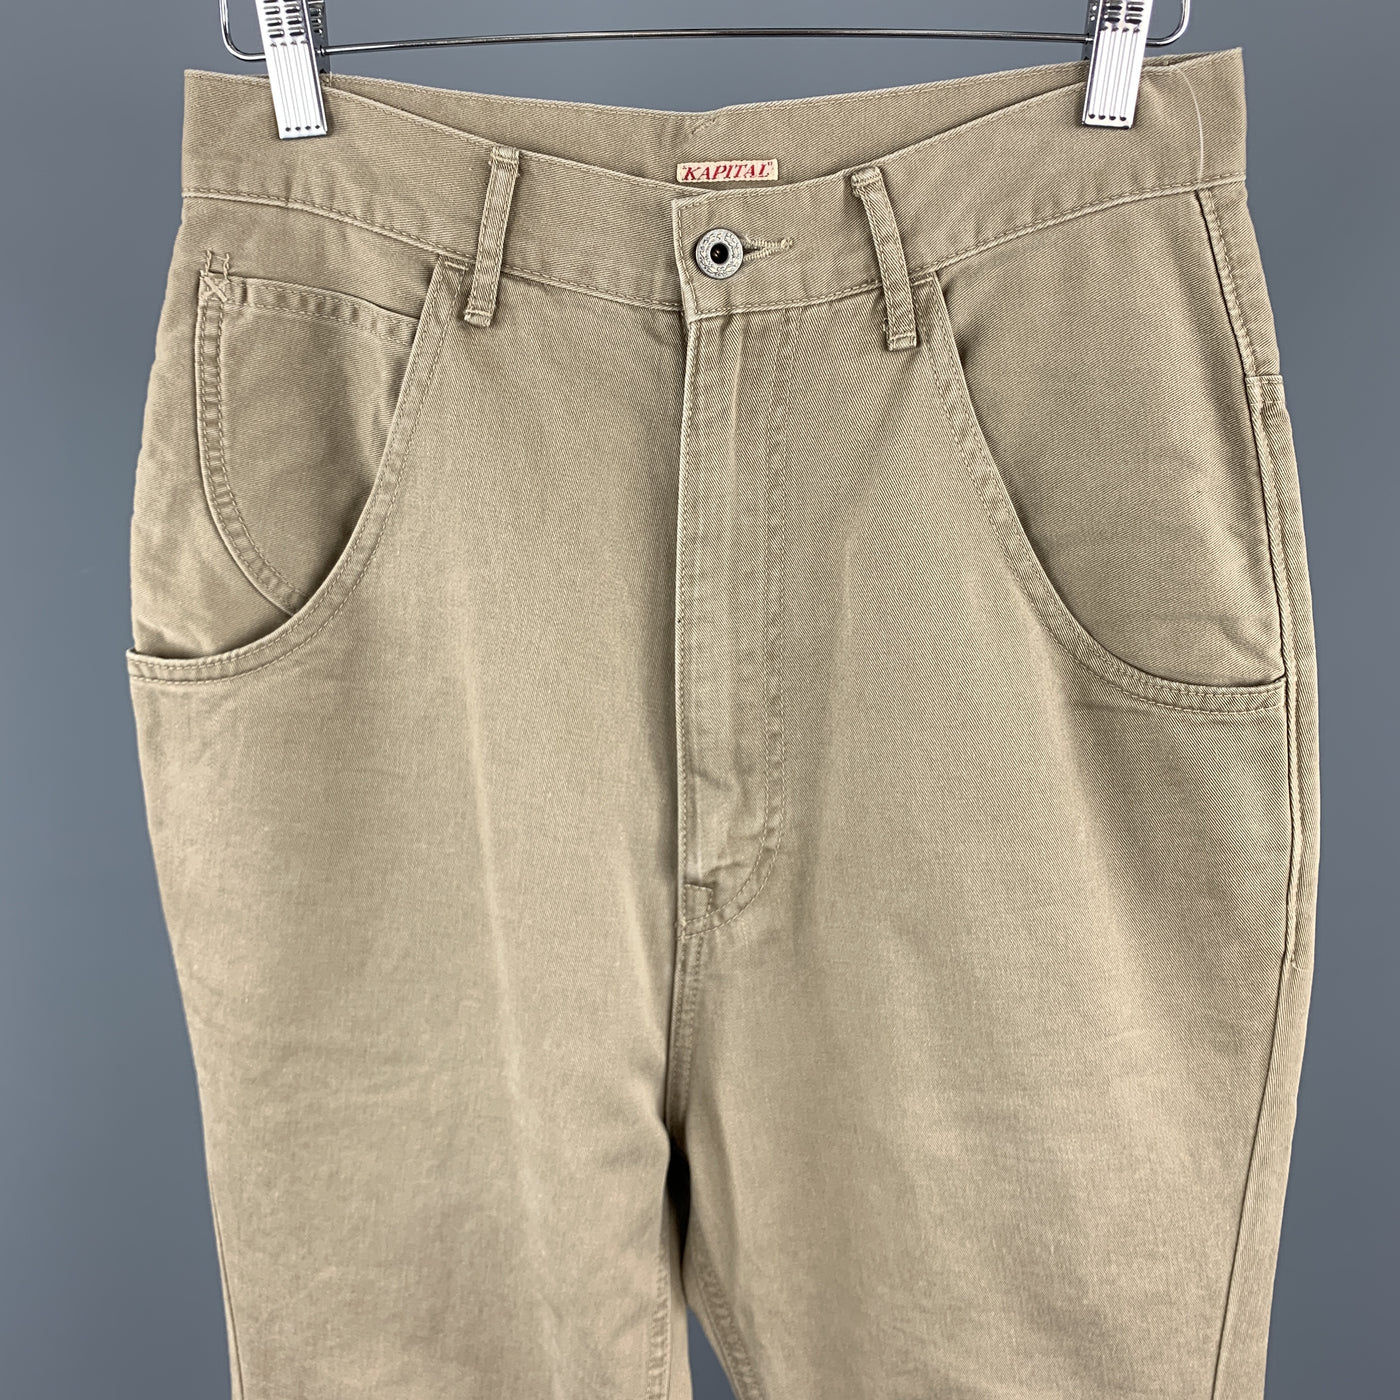 KAPITAL Size 30 x 30 Tan Cotton Back Belt Casual Pants